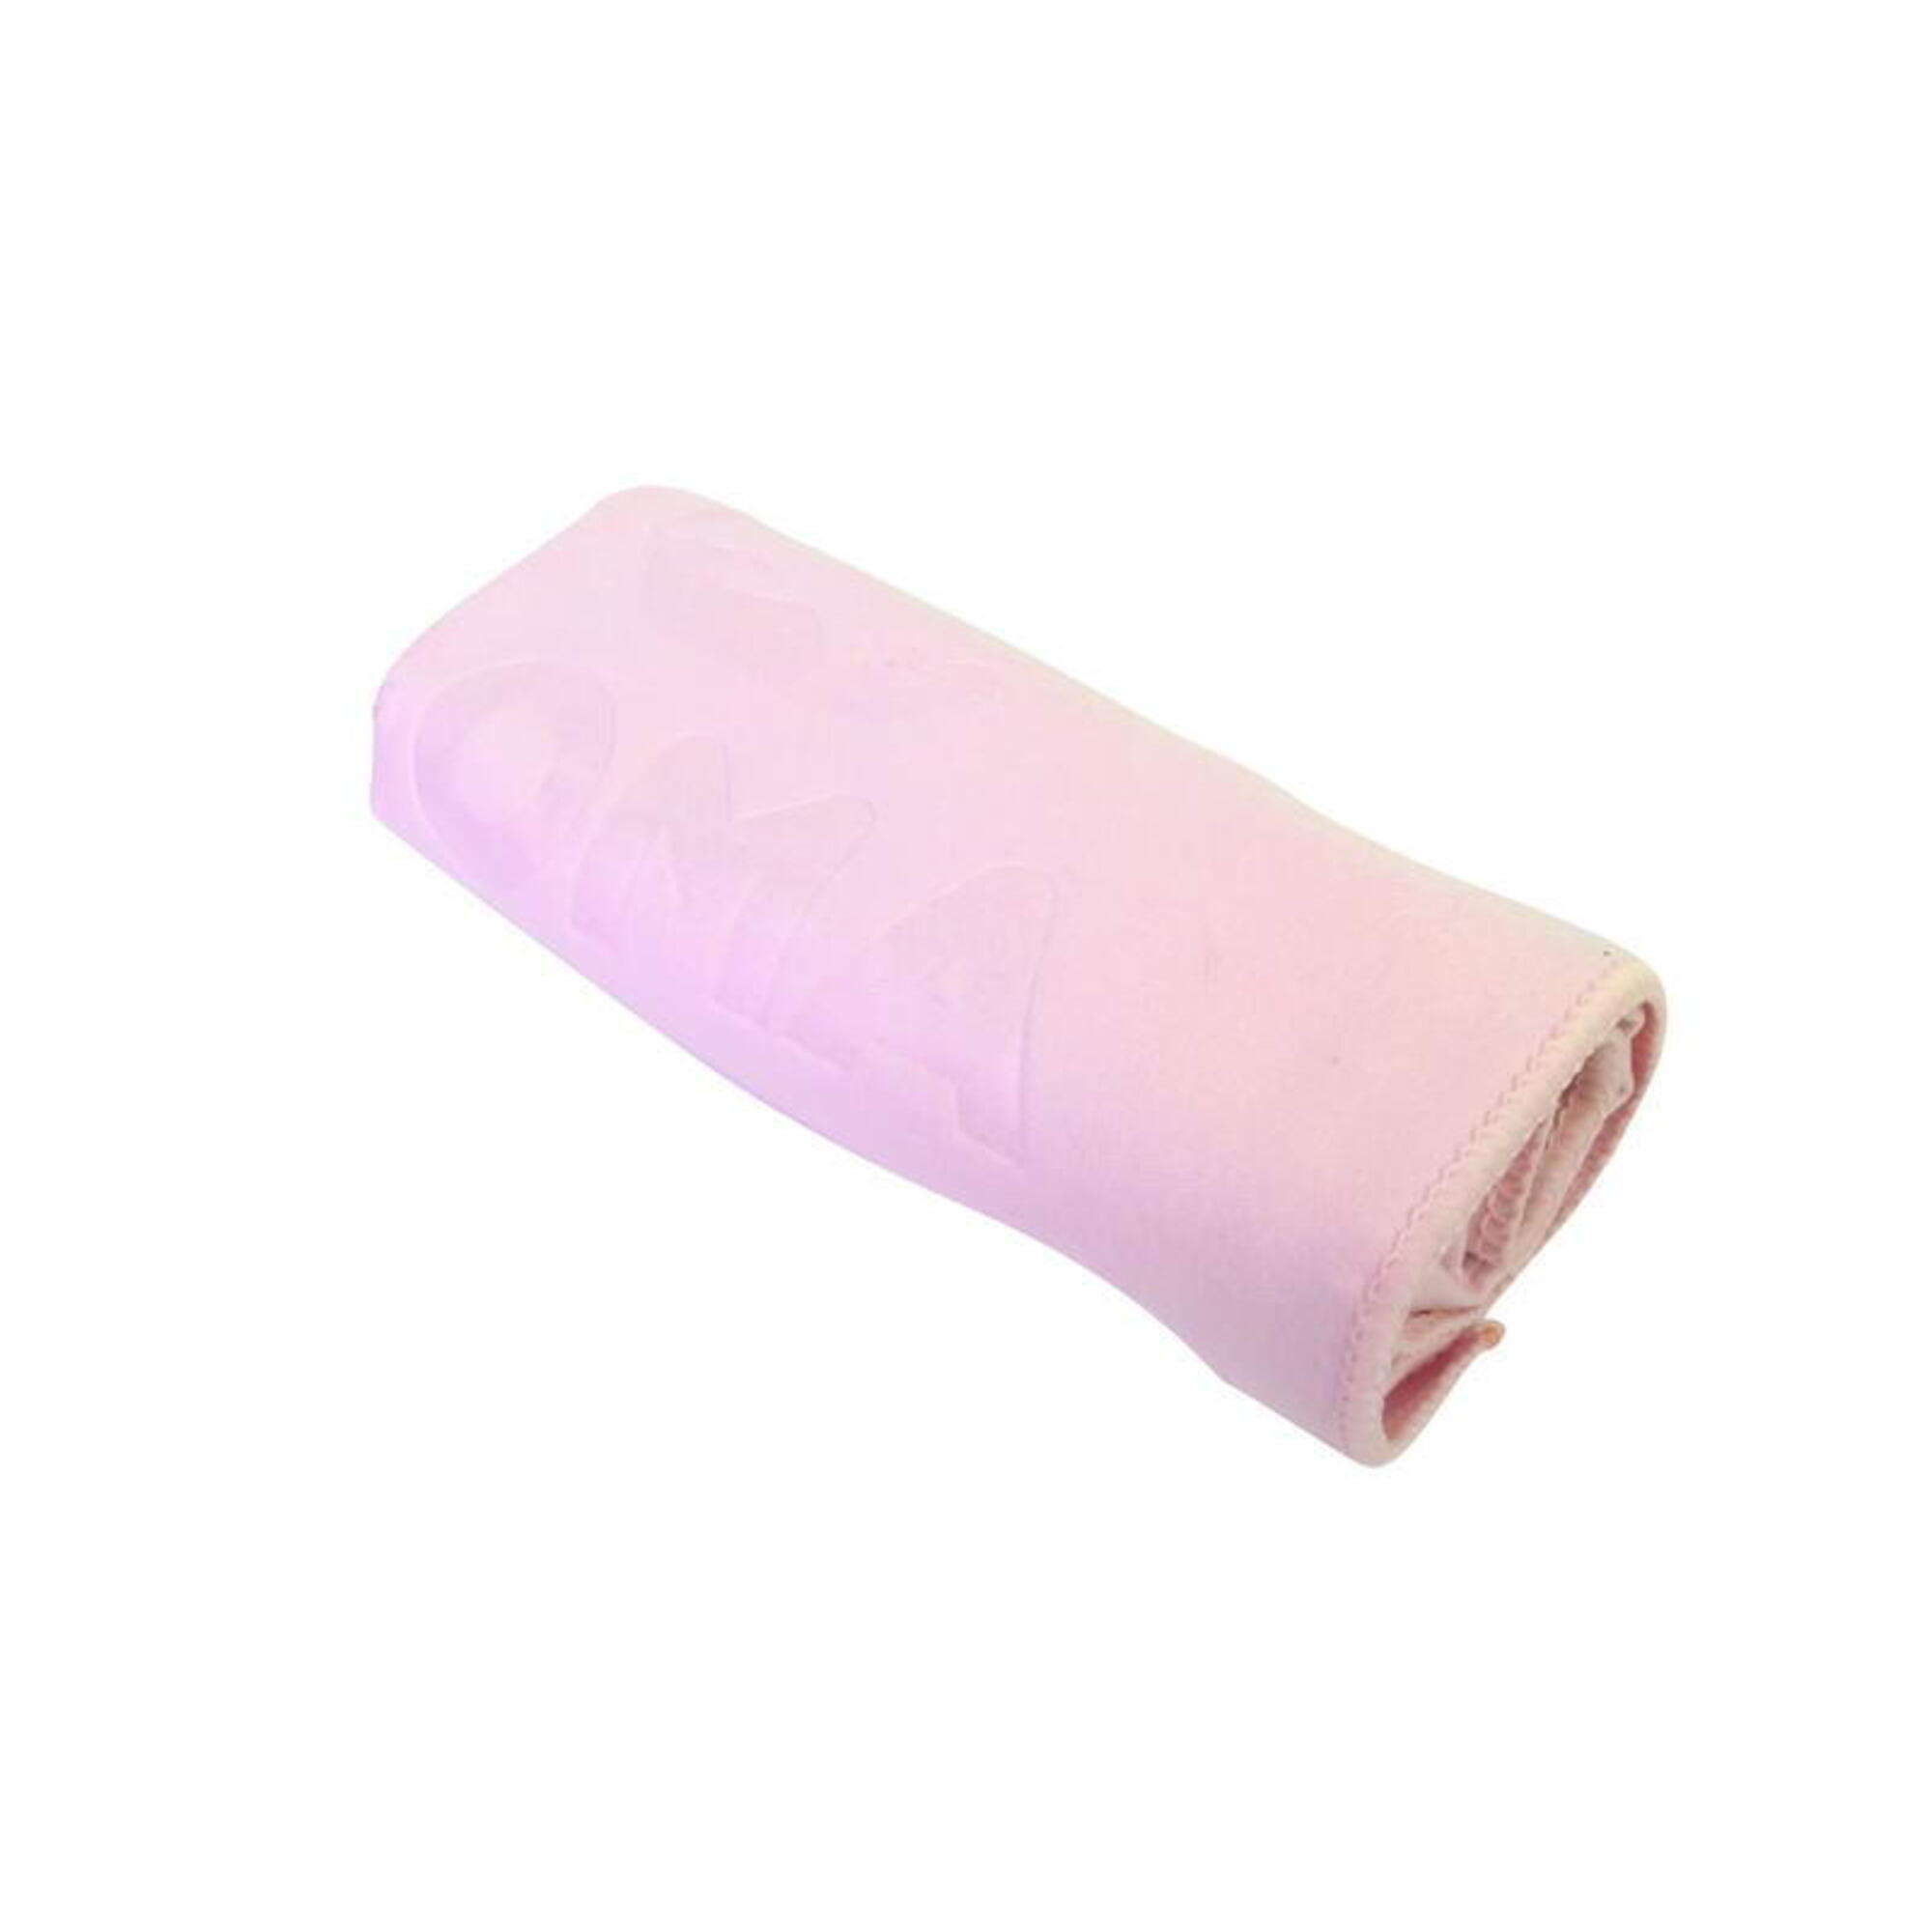 微纖吸水毛巾, 粉紅色